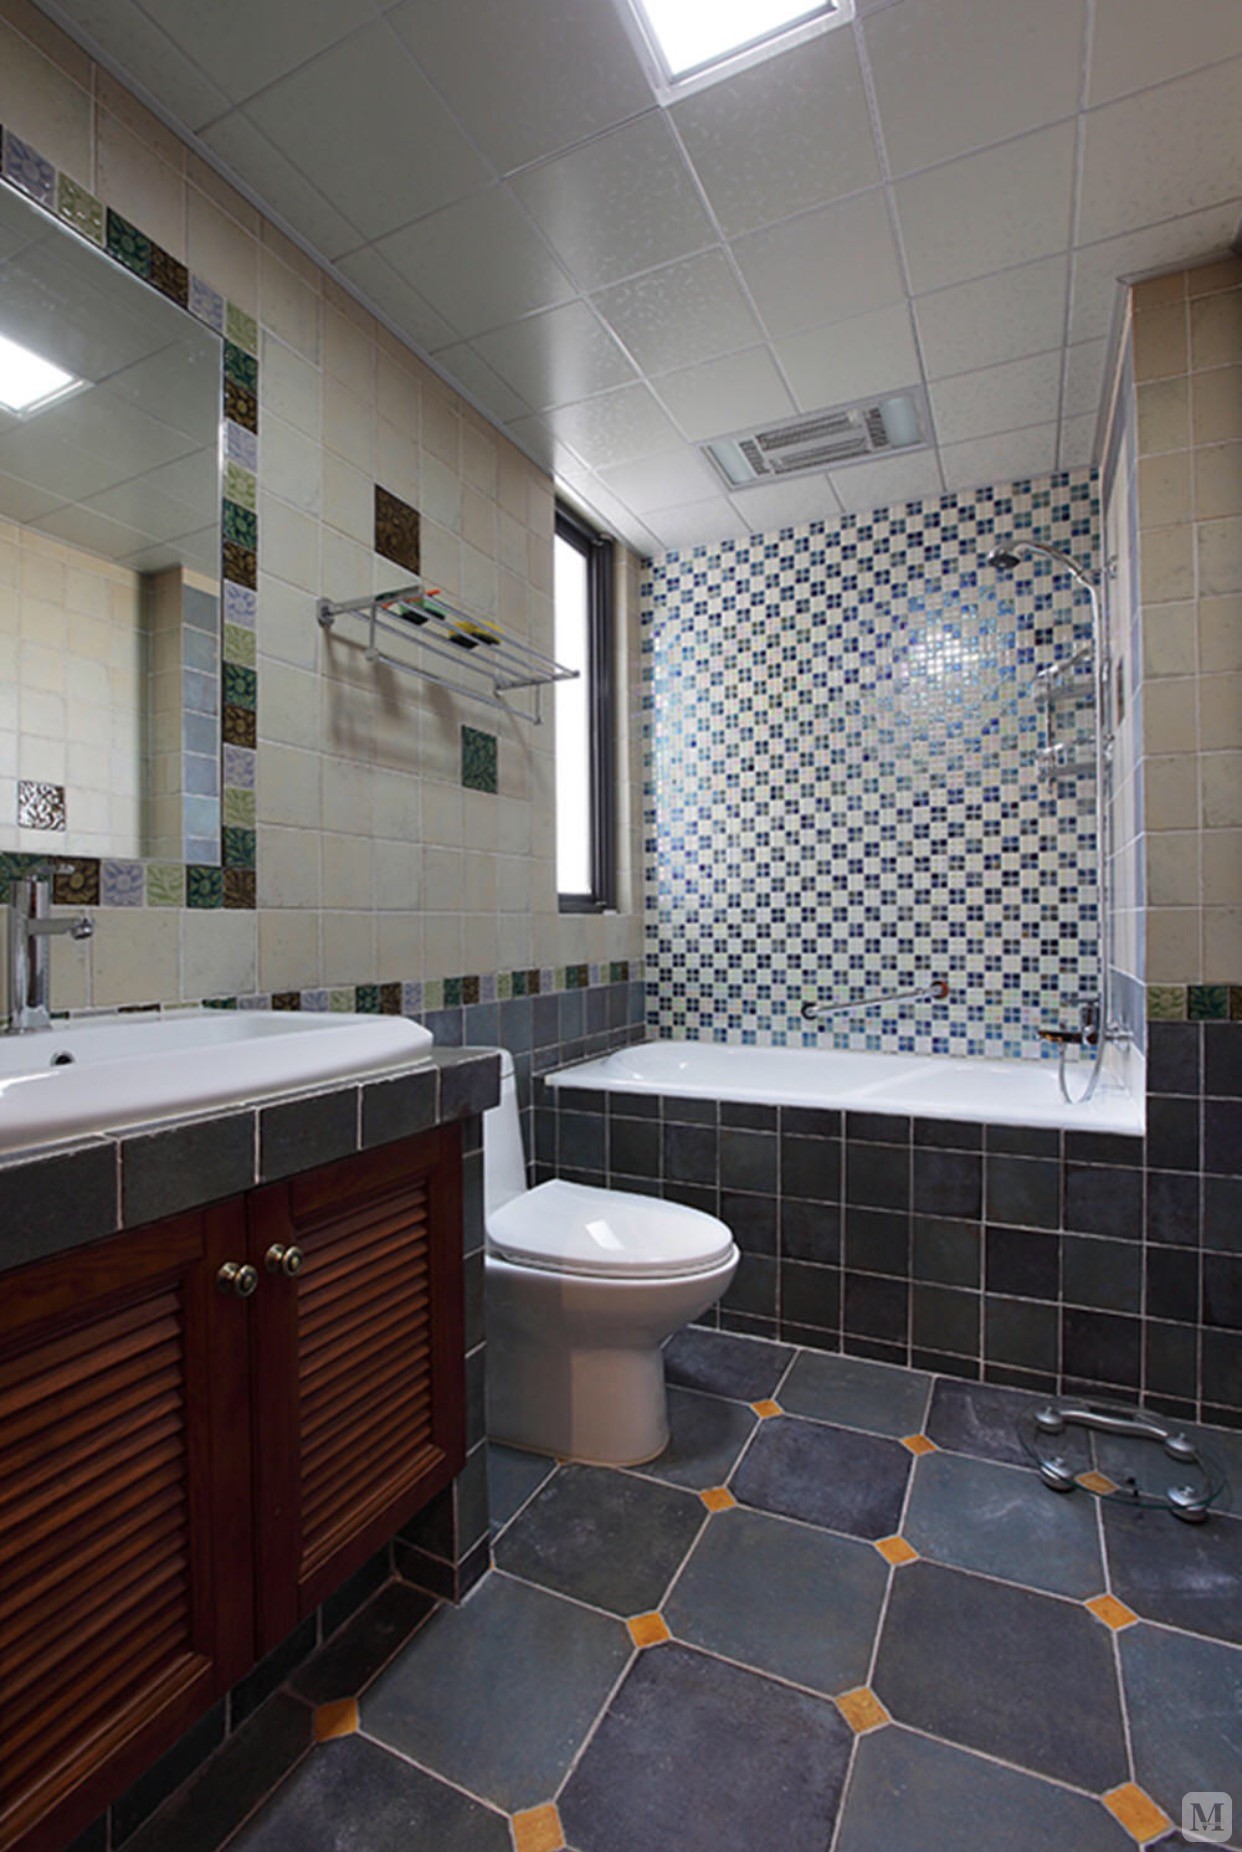 透明淋浴房白色卫浴 绿色的马赛克背景墙 浴室柜和自然特色的浴室镜框，让整个空间既雅致又清爽